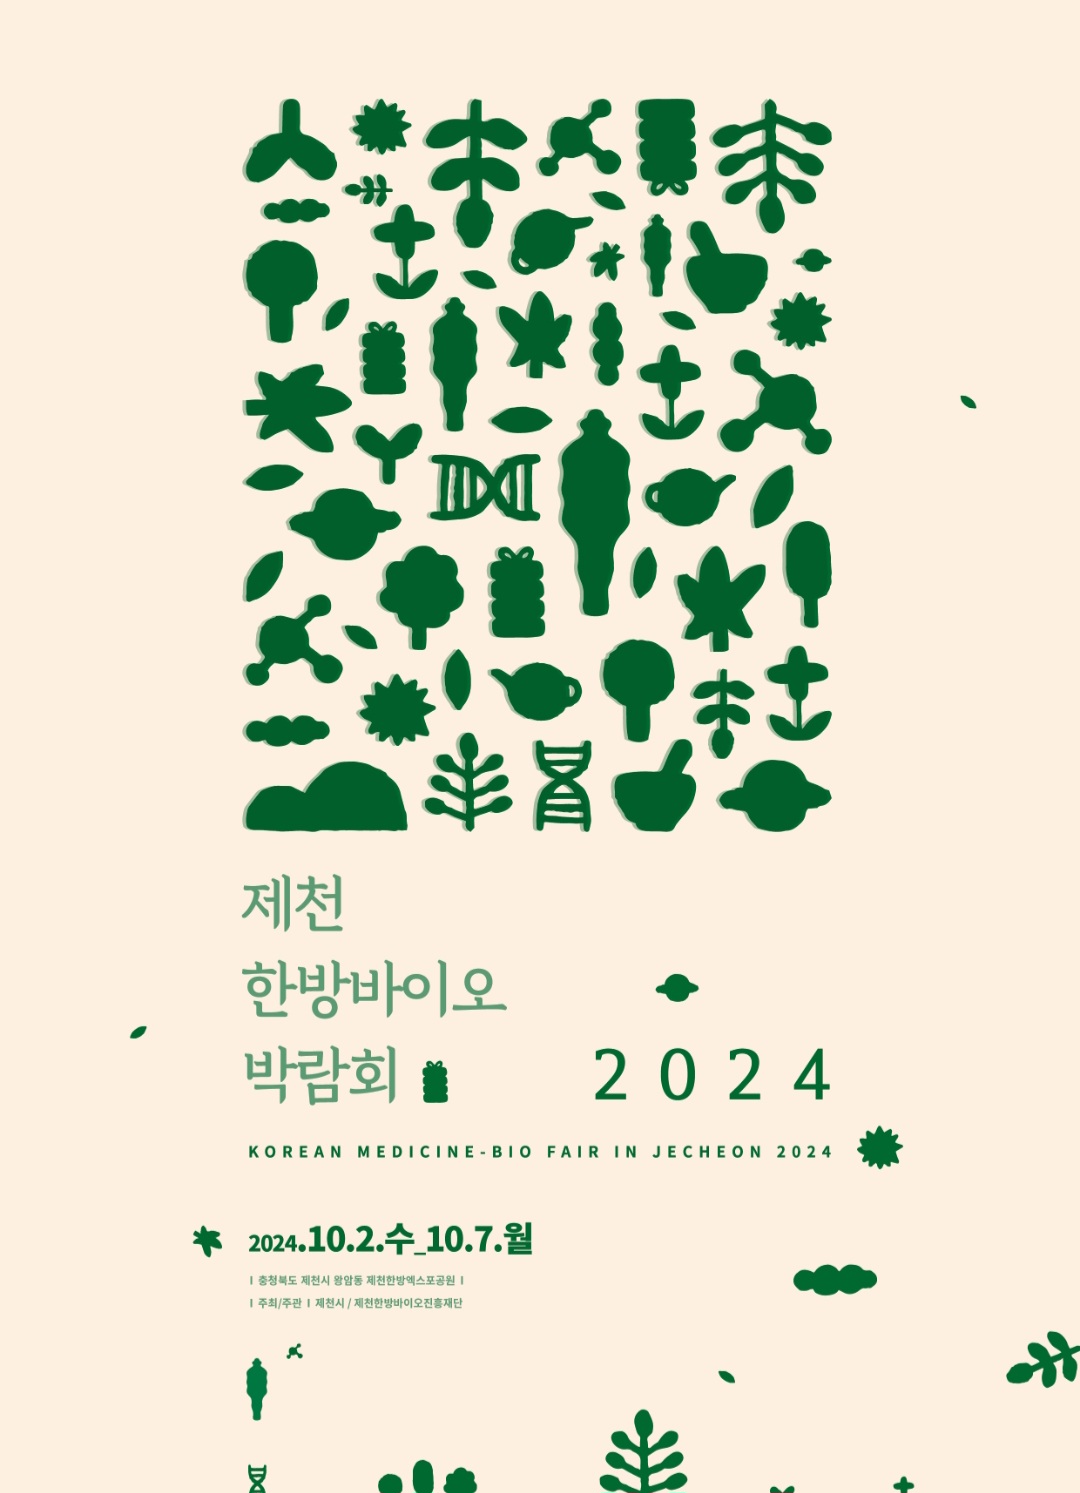 2024제천한방바이오박람회, 슬로건 및 포스터 디자인 공모전 결과 발표